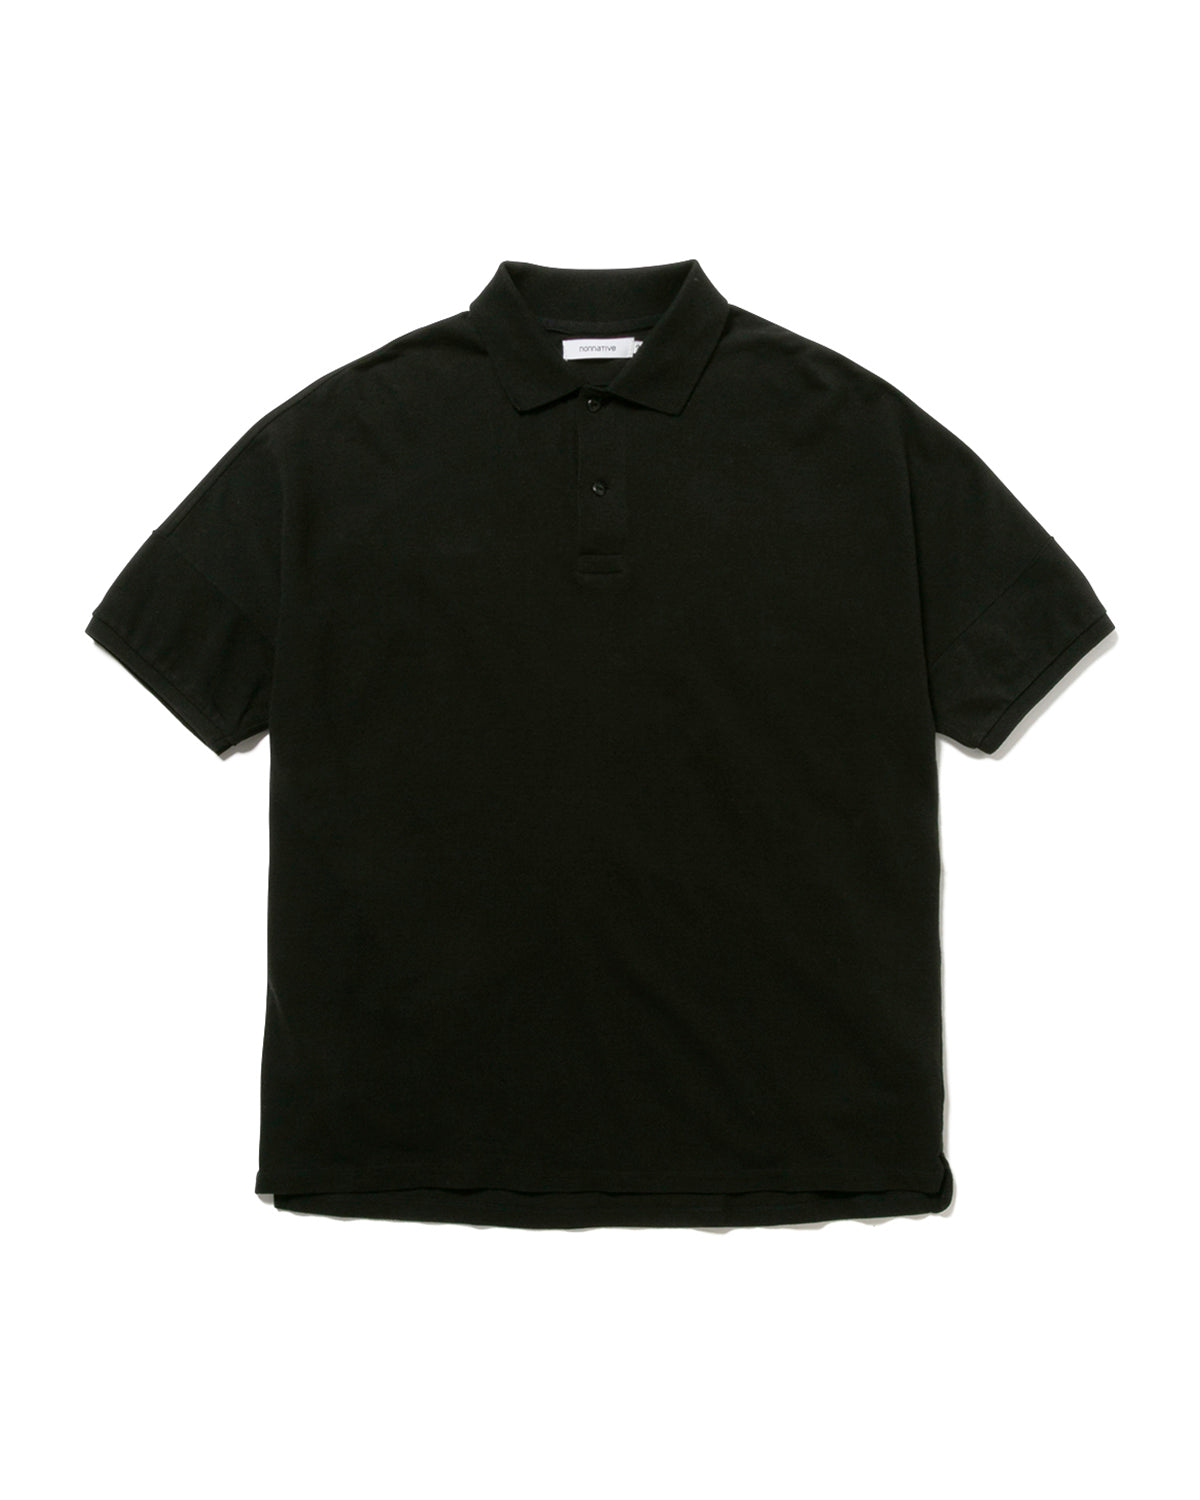 Clerk S/S Polo Shirt C/L Pique